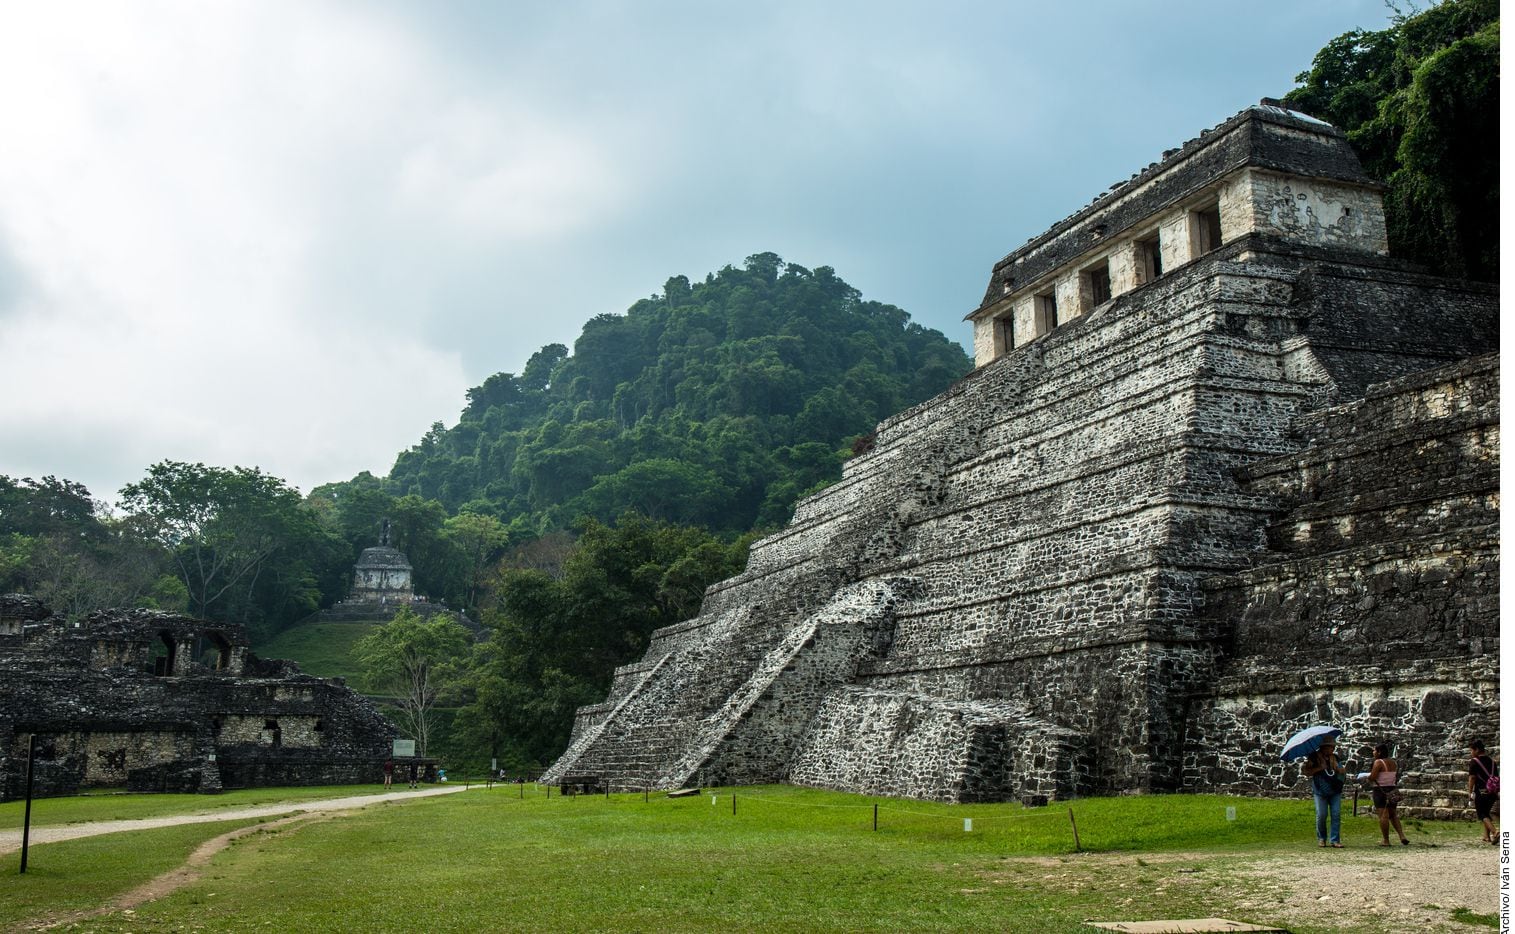 México cuenta con 35 sitios nombrados Patrimonio de la Humanidad, entre ellos Palenque,...